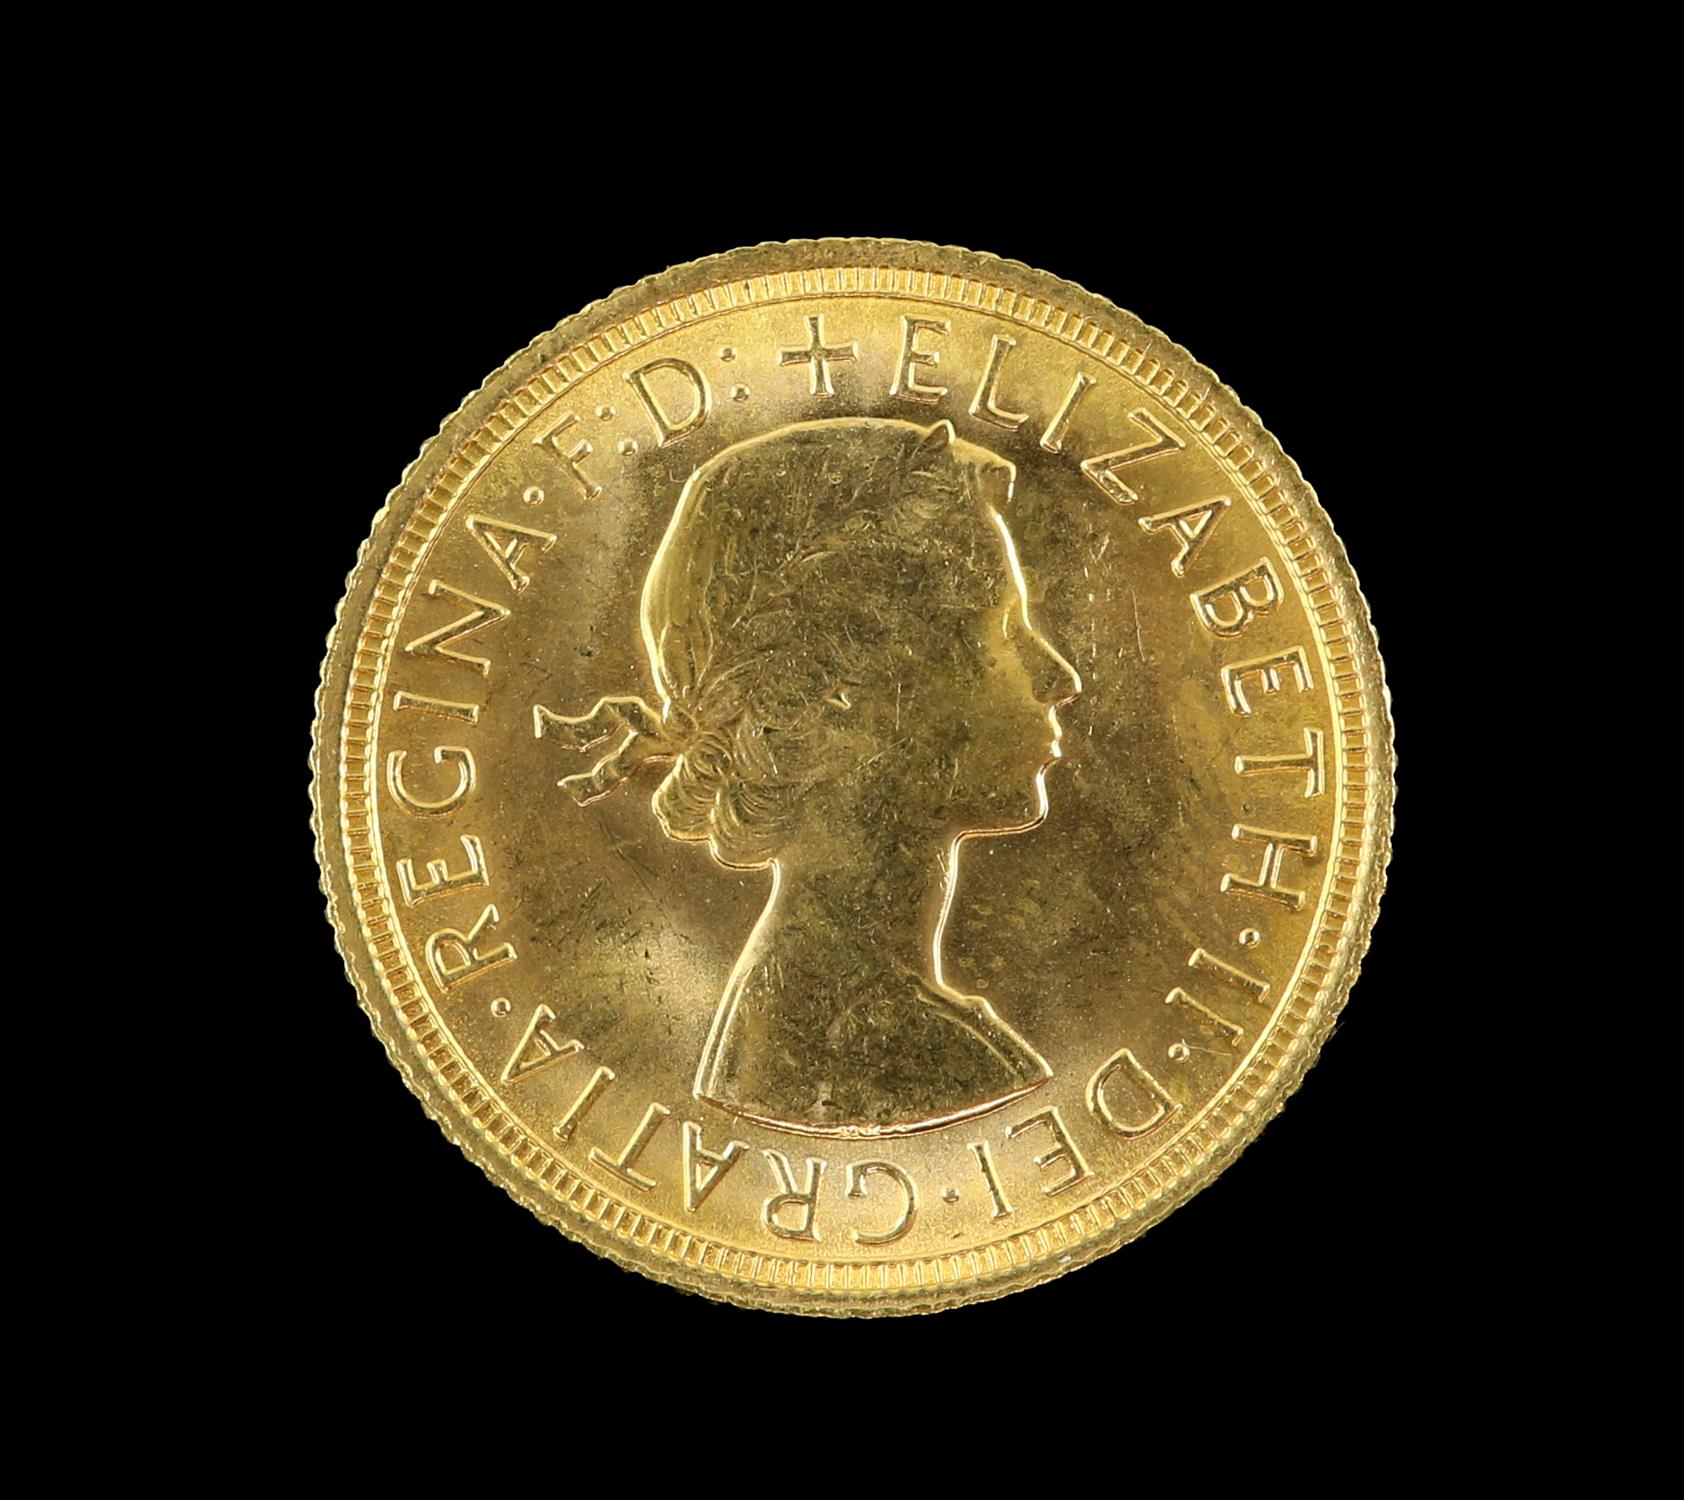 Elizabeth II gold sovereign 1967 - Image 2 of 2